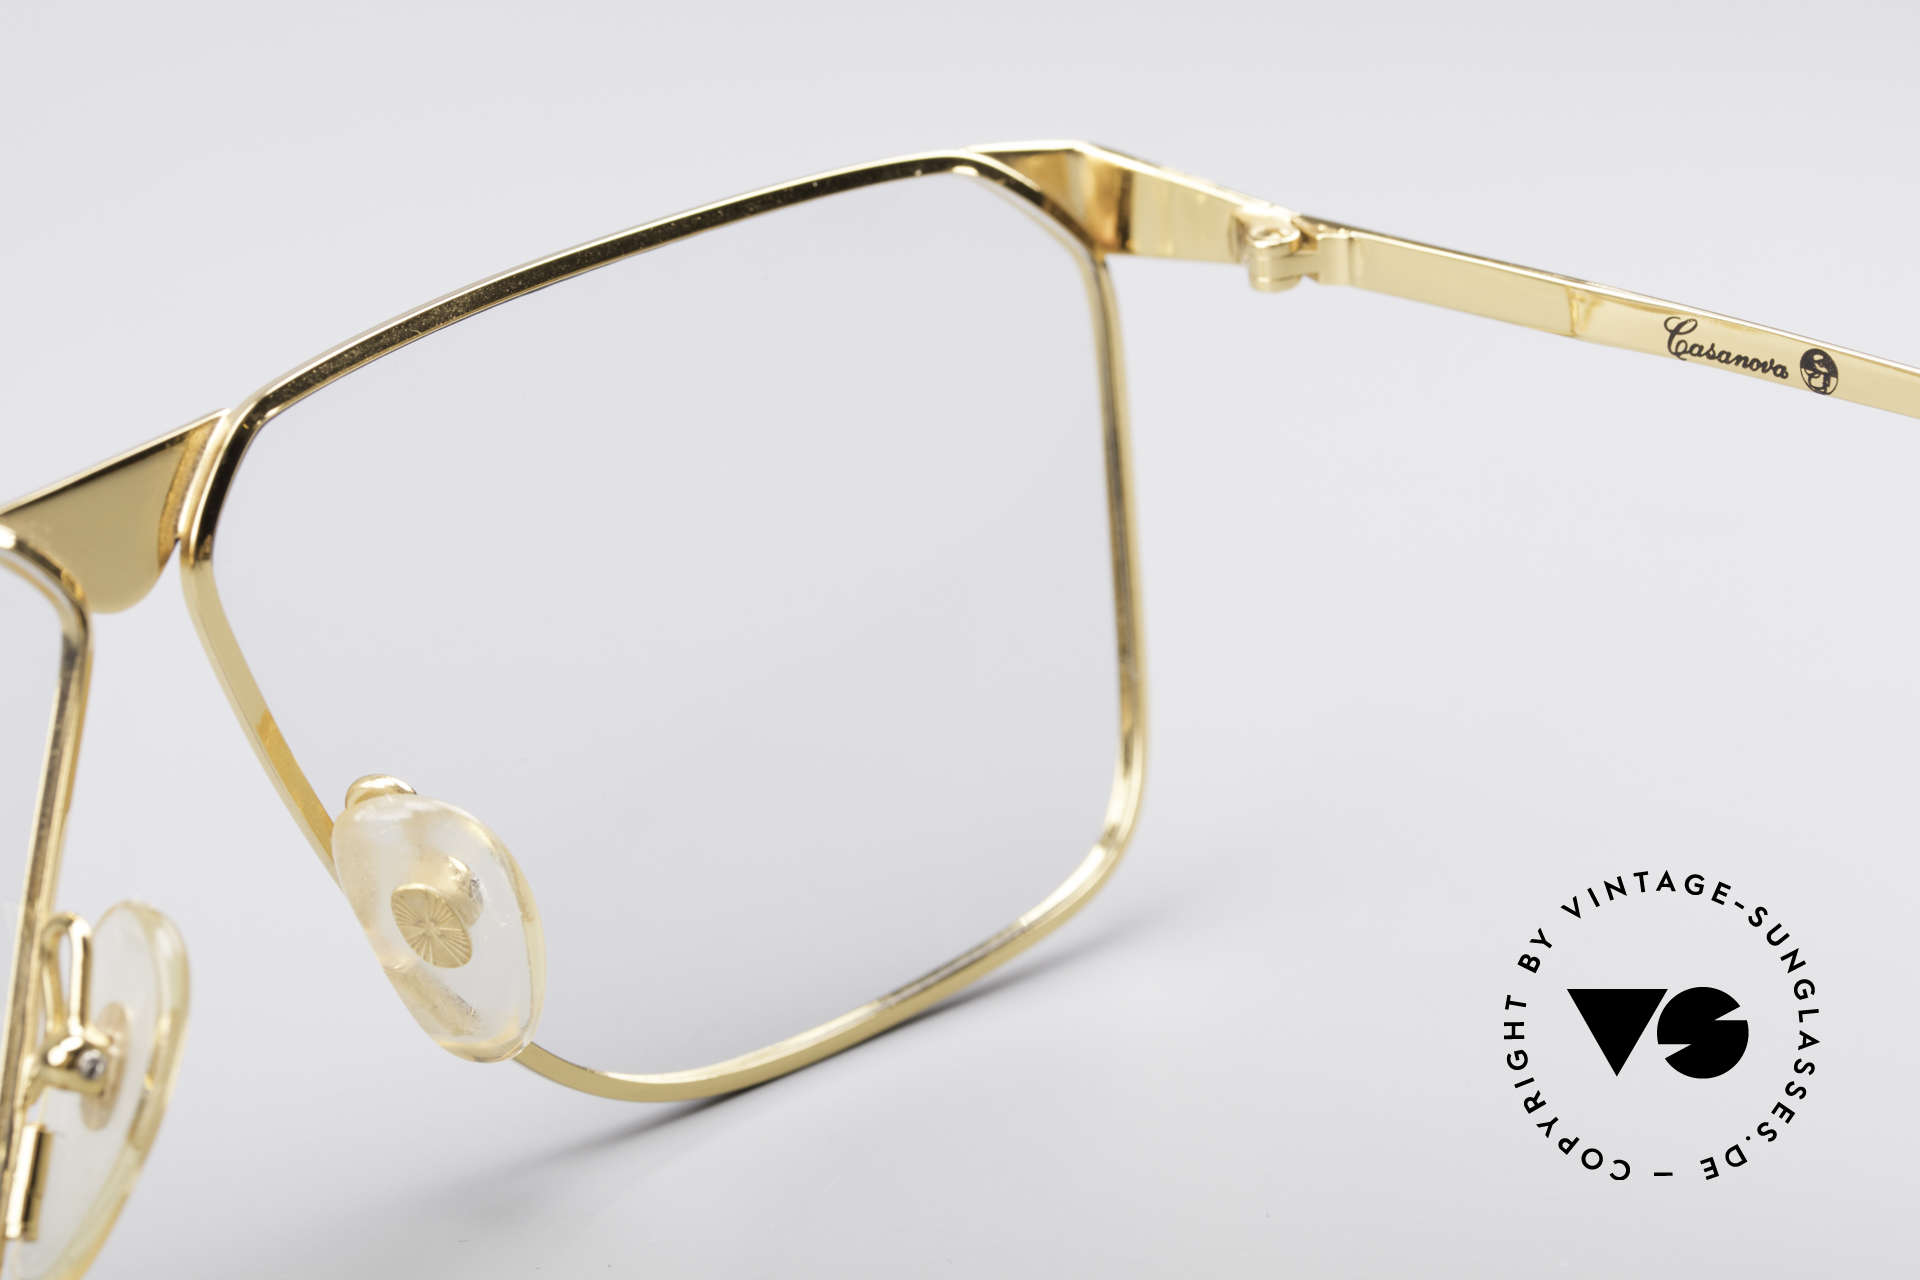 Casanova NM9 No Retro 80er Vintage Brille, original Demogläser können beliebig getauscht werden, Passend für Herren